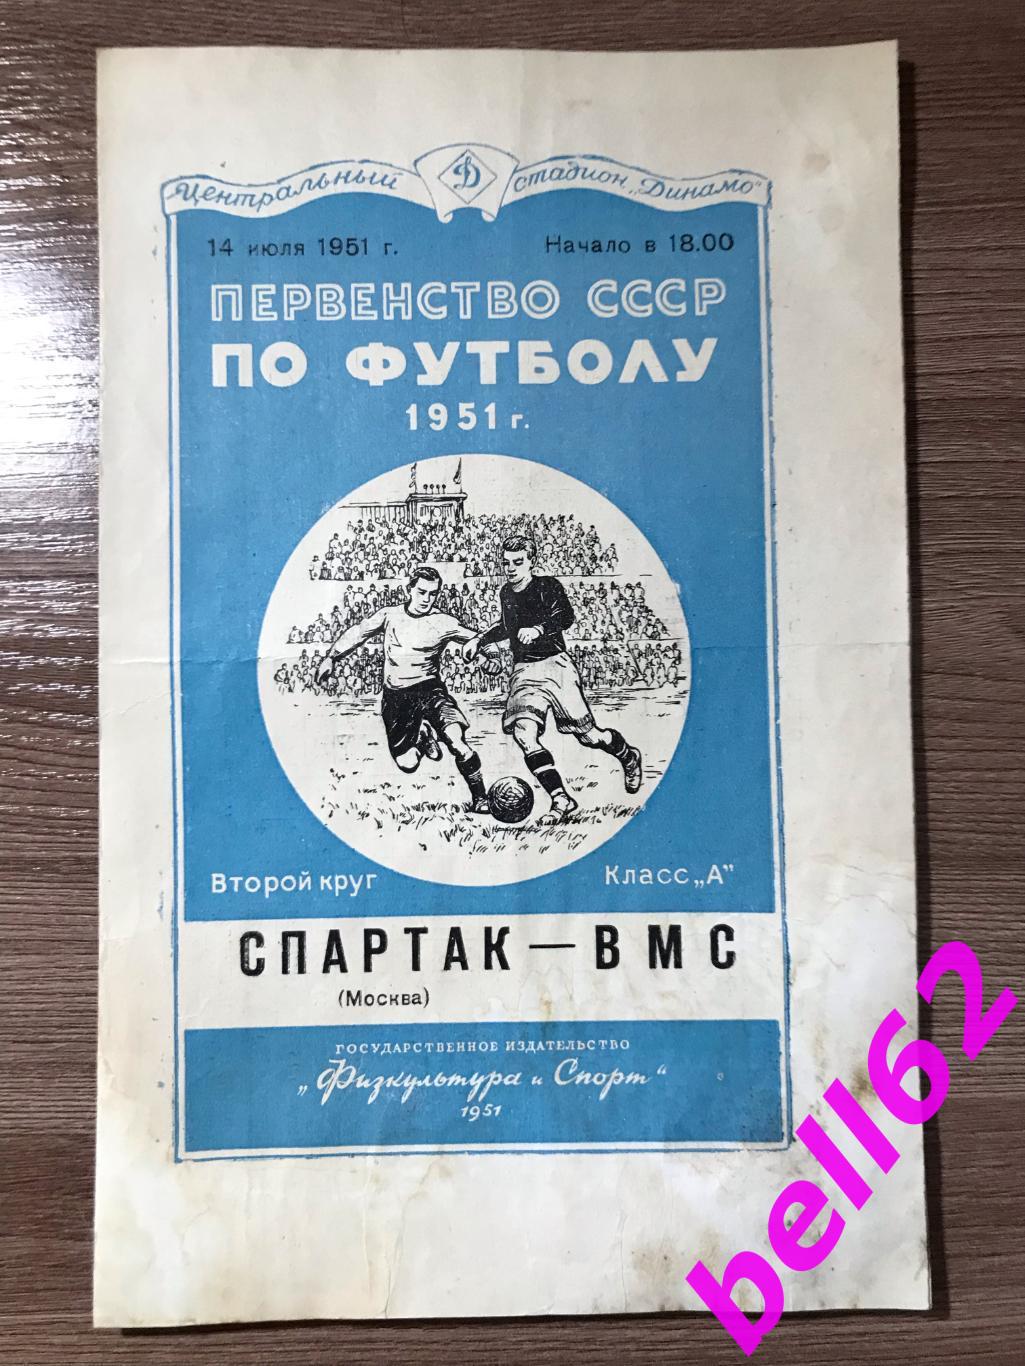 Спартак Москва-ВМС-14.07.1951 г.